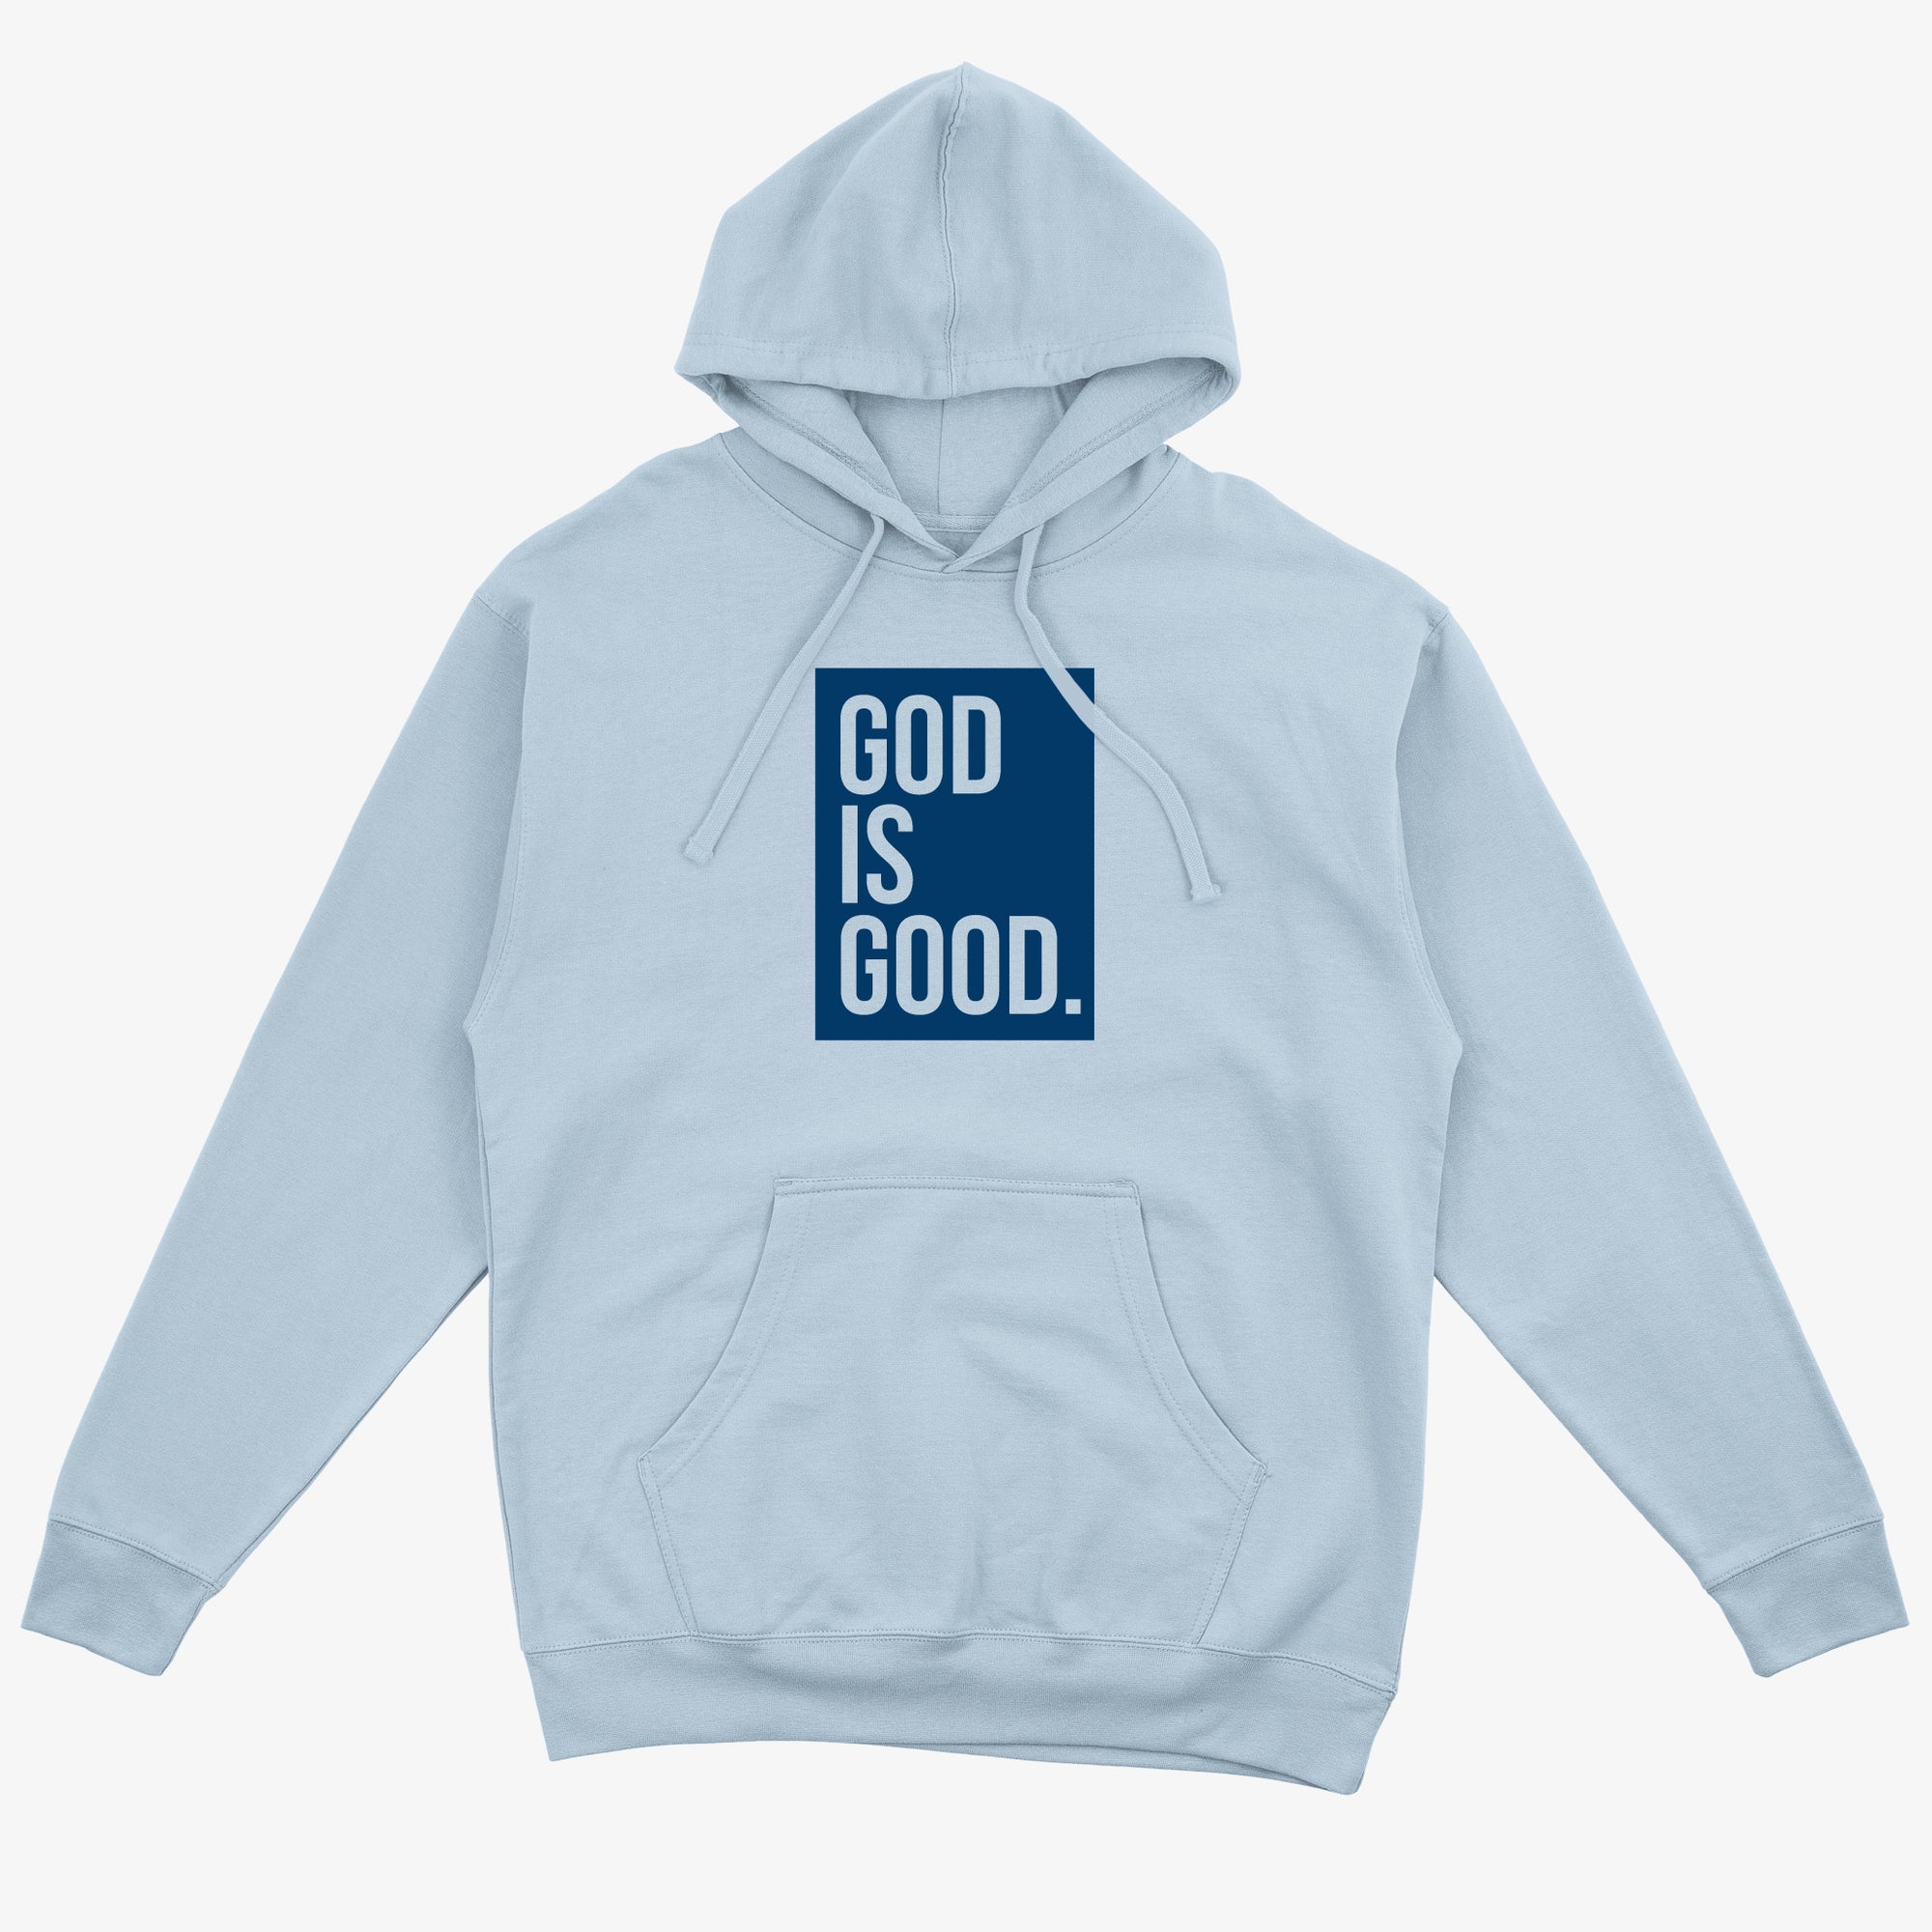 "GOD IS GOOD" HOODIE + FREE TEE (POWDER BLUE/BLUE)